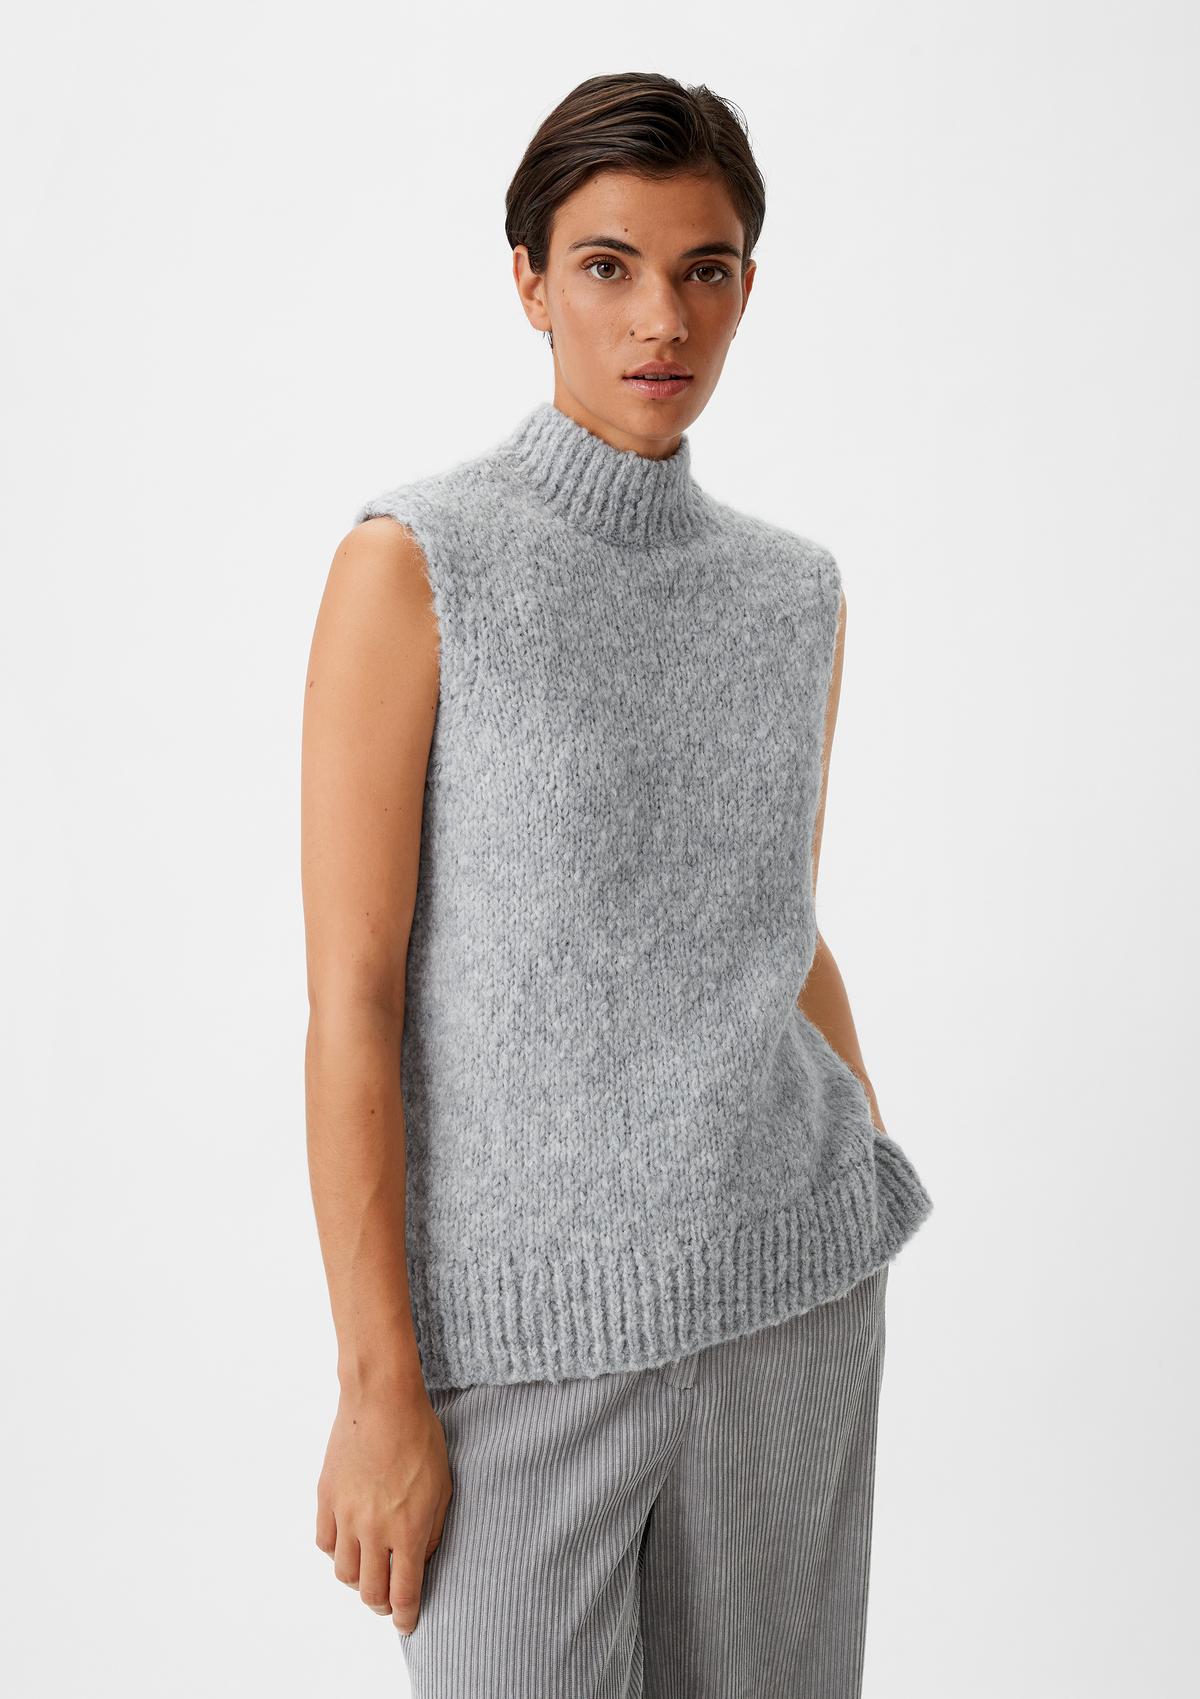 Sleeveless knitted jumper in an alpaca blend